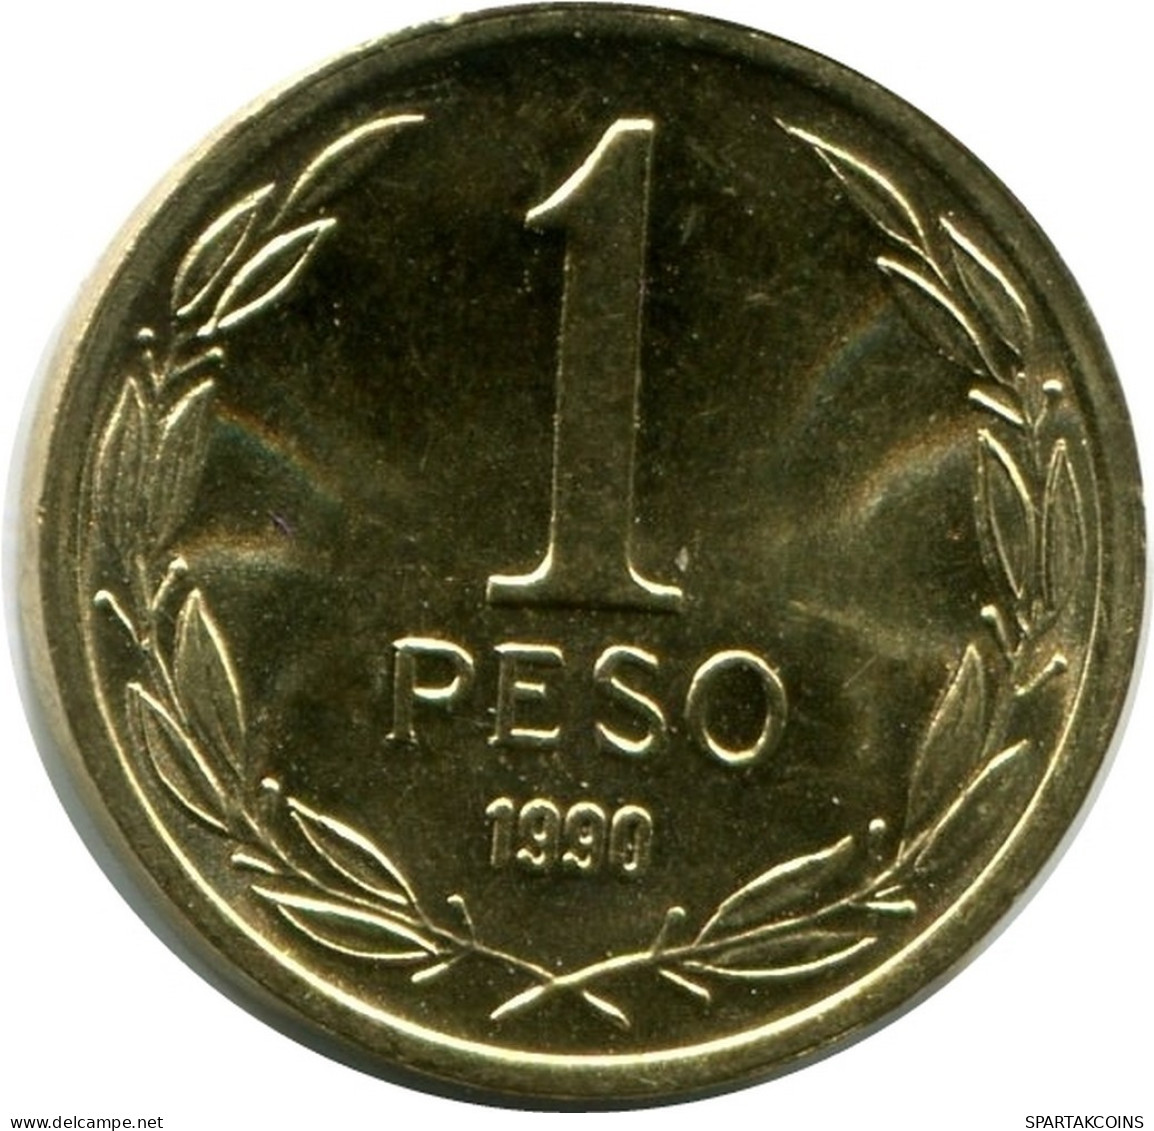 1 PESO 1990 CHILE UNC Coin #M10134.U.A - Chili